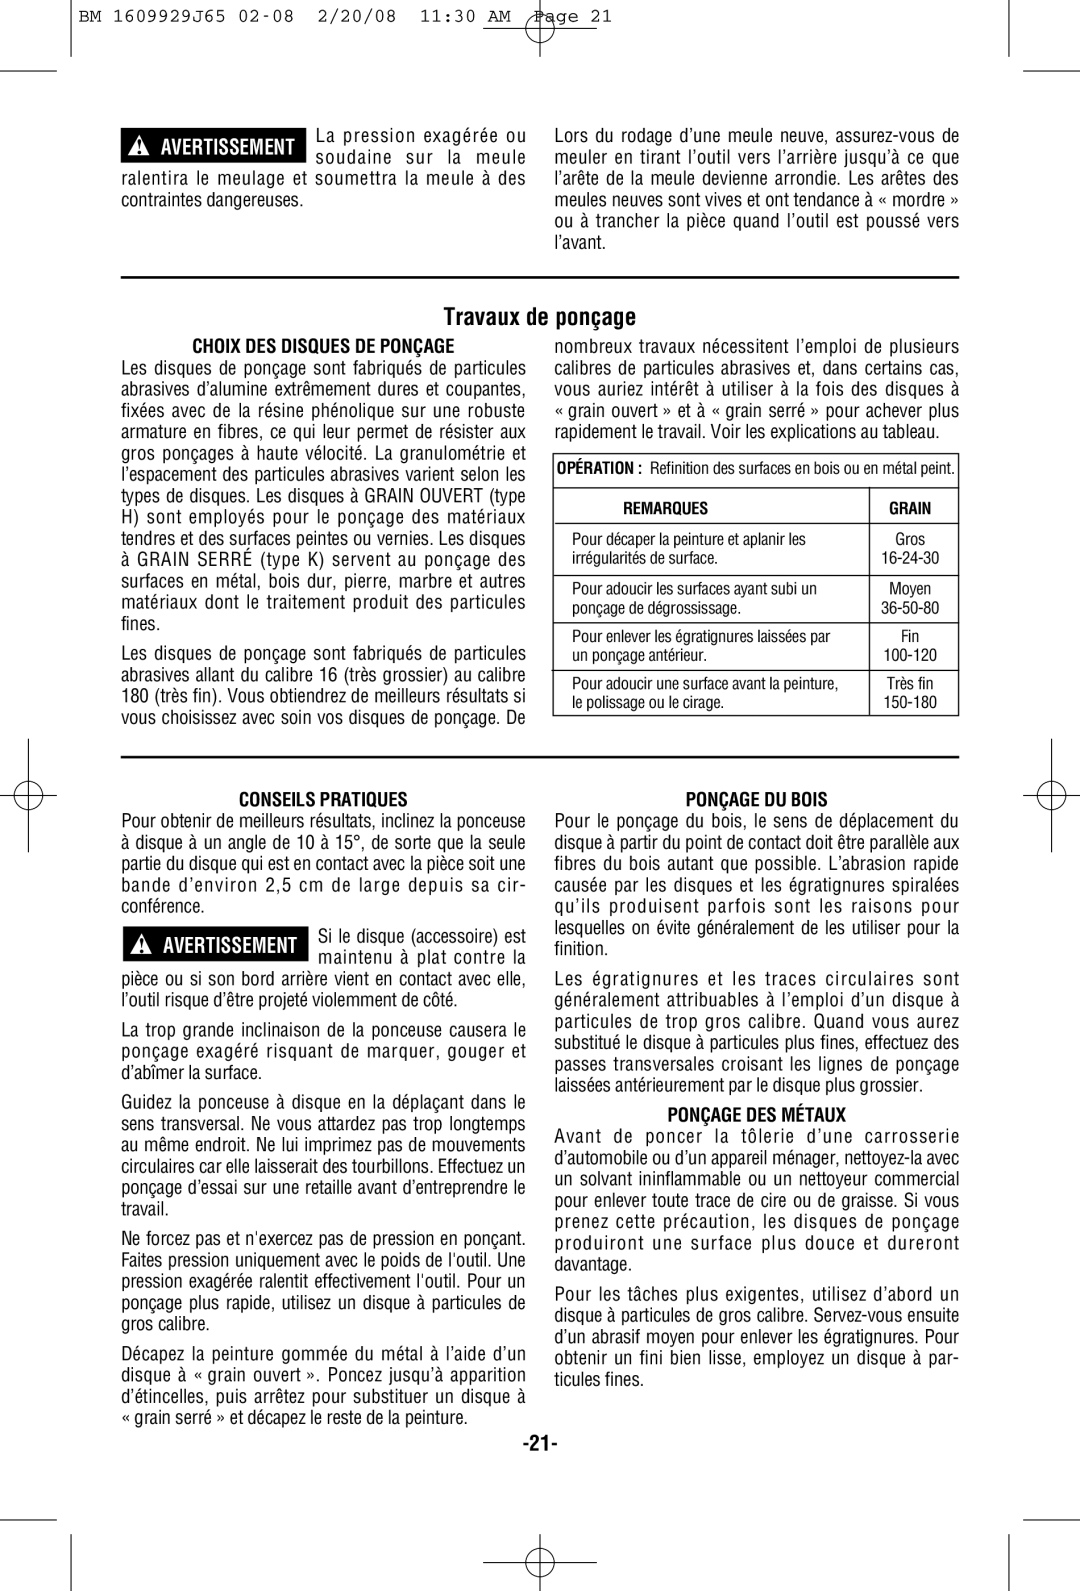 Bosch Power Tools 1812PSD, 1811PSD, 1810PSD manual Travaux de ponçage, Avertissement 